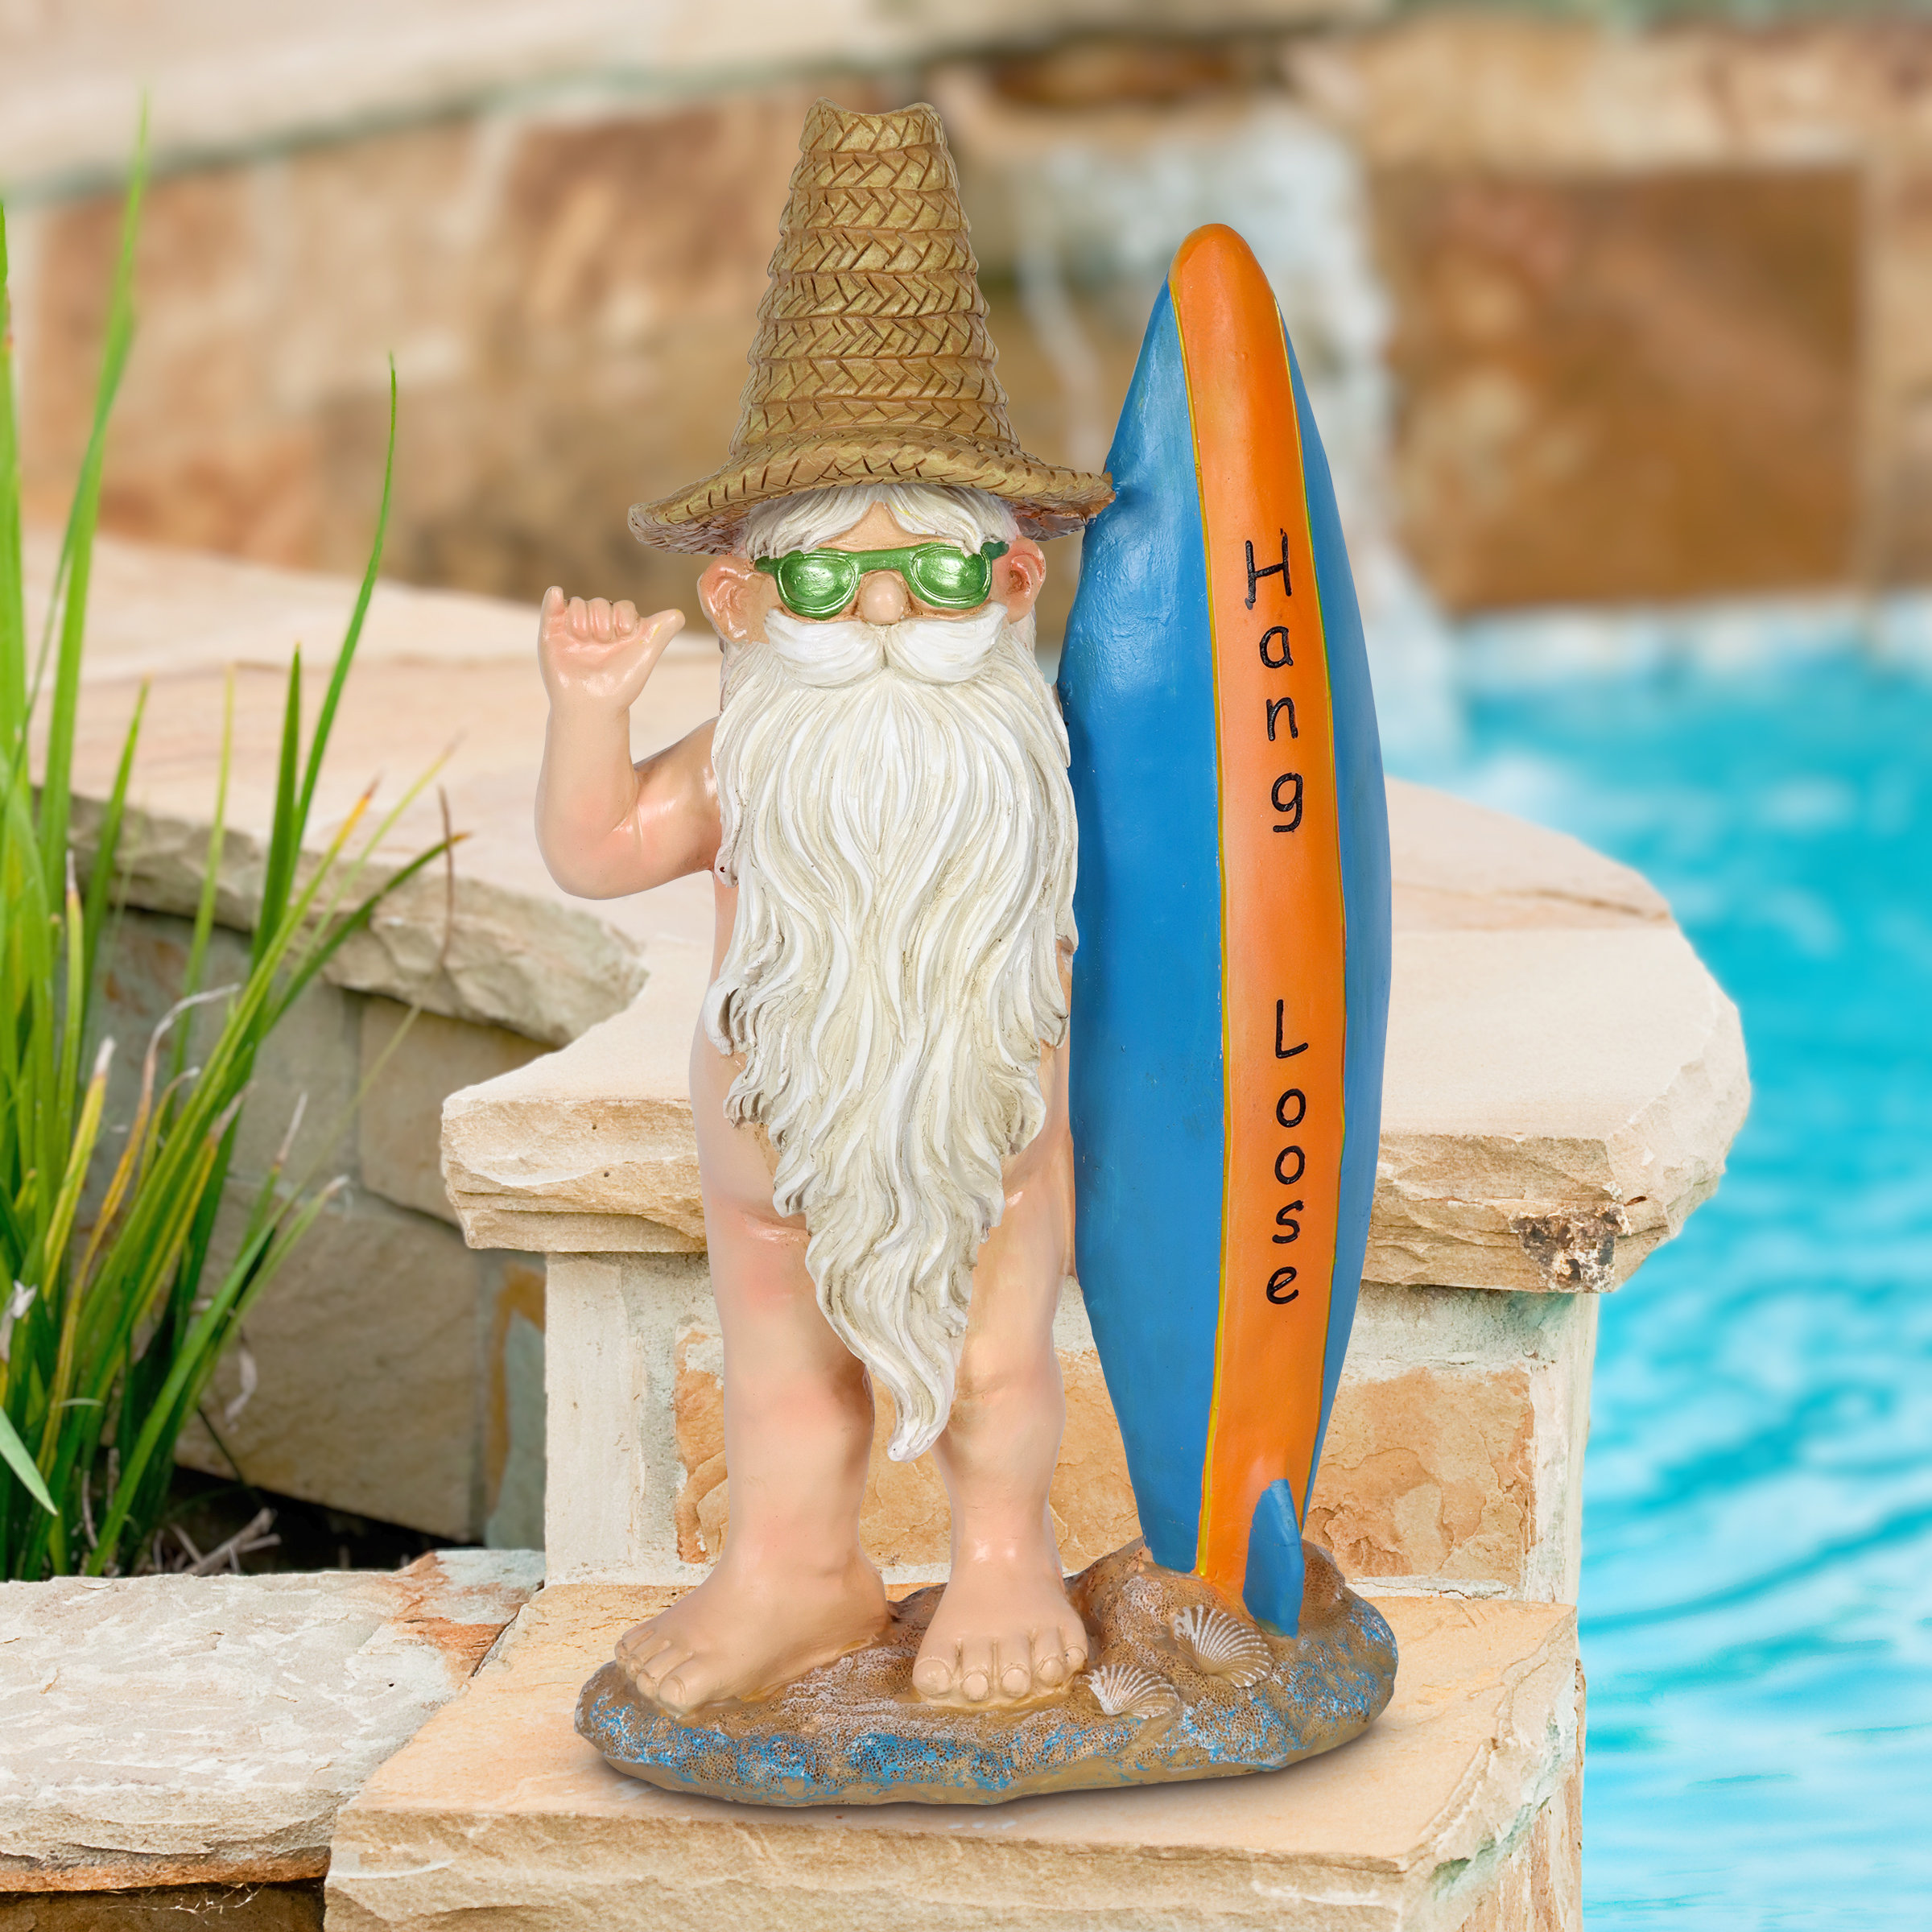 https://assets.wfcdn.com/im/84560607/compr-r85/2195/219548949/exhart-good-time-beach-bum-naked-surfer-gnome-statue.jpg